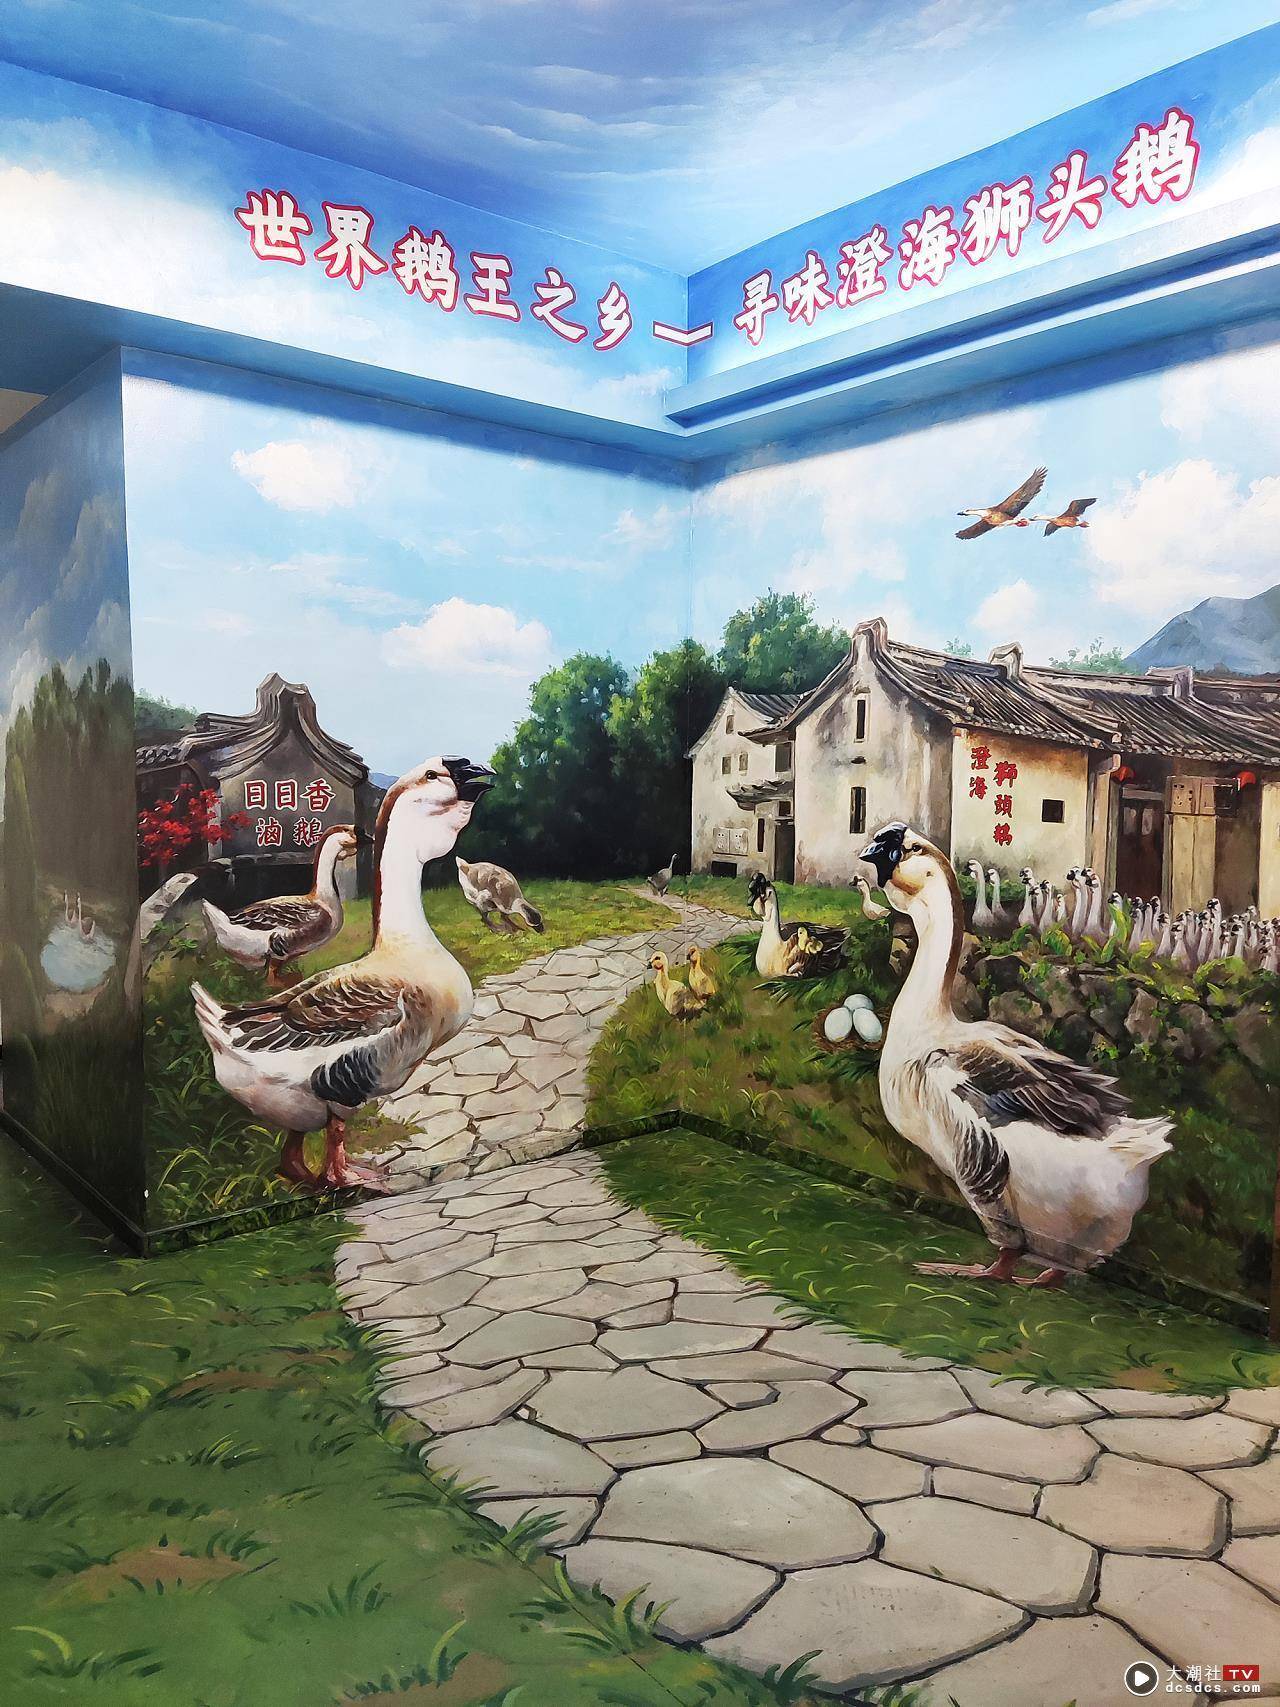 汕头3D墙绘日日香鹅肉总店 / 鹅场景墙绘 / 餐饮壁画